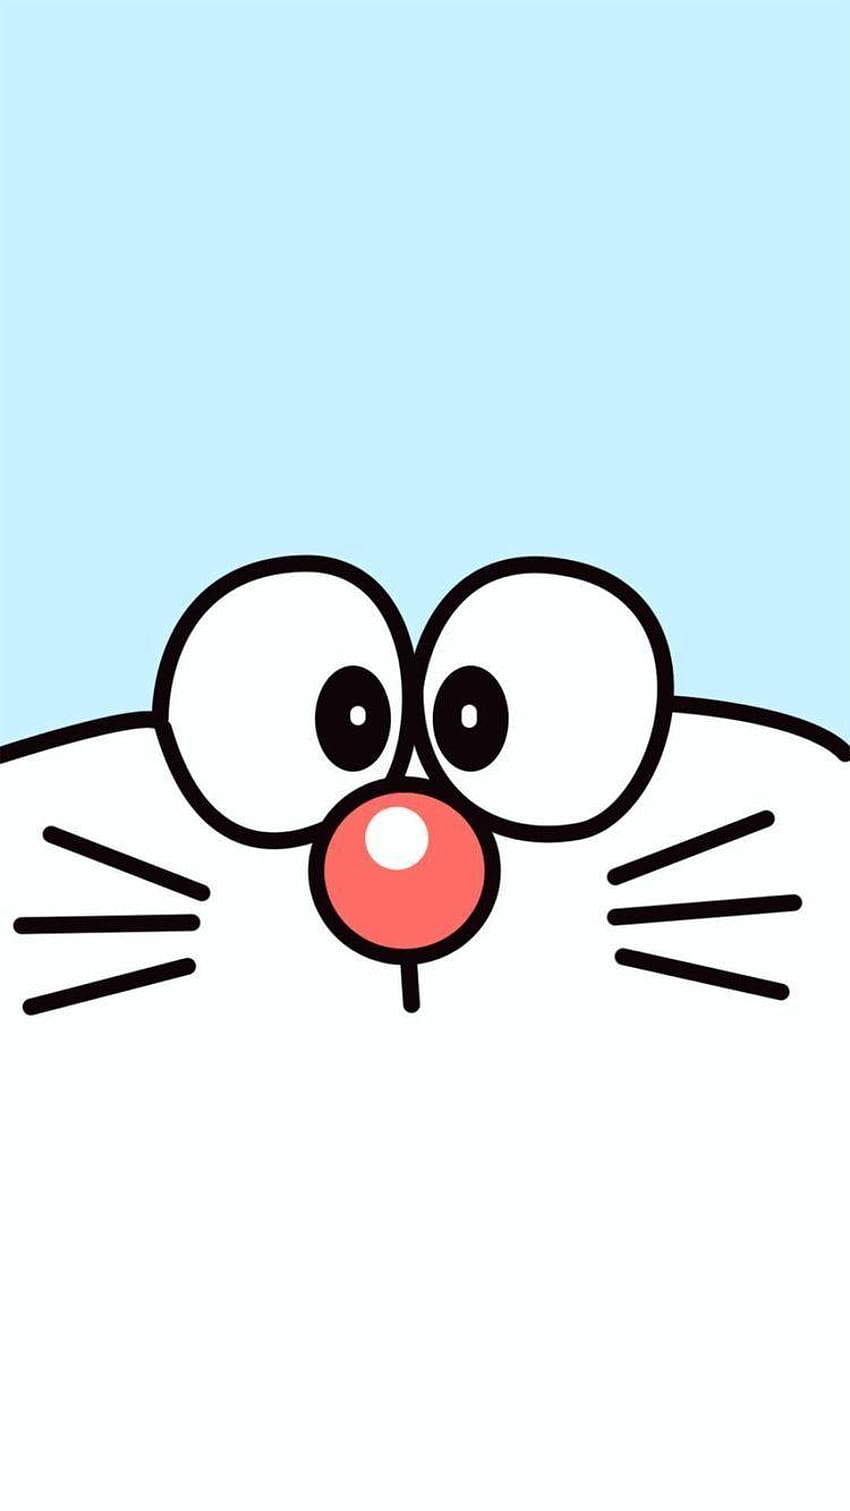 Nếu bạn là fan của Doraemon và thích những hình nền đáng yêu thì bạn không thể bỏ lỡ những bức ảnh Doraemon cho iPhone chất lượng cao này. Hình ảnh sẽ mang lại niềm vui và cảm giác ấm áp như bạn đang được bảo vệ bởi chú mèo máy đáng yêu này.